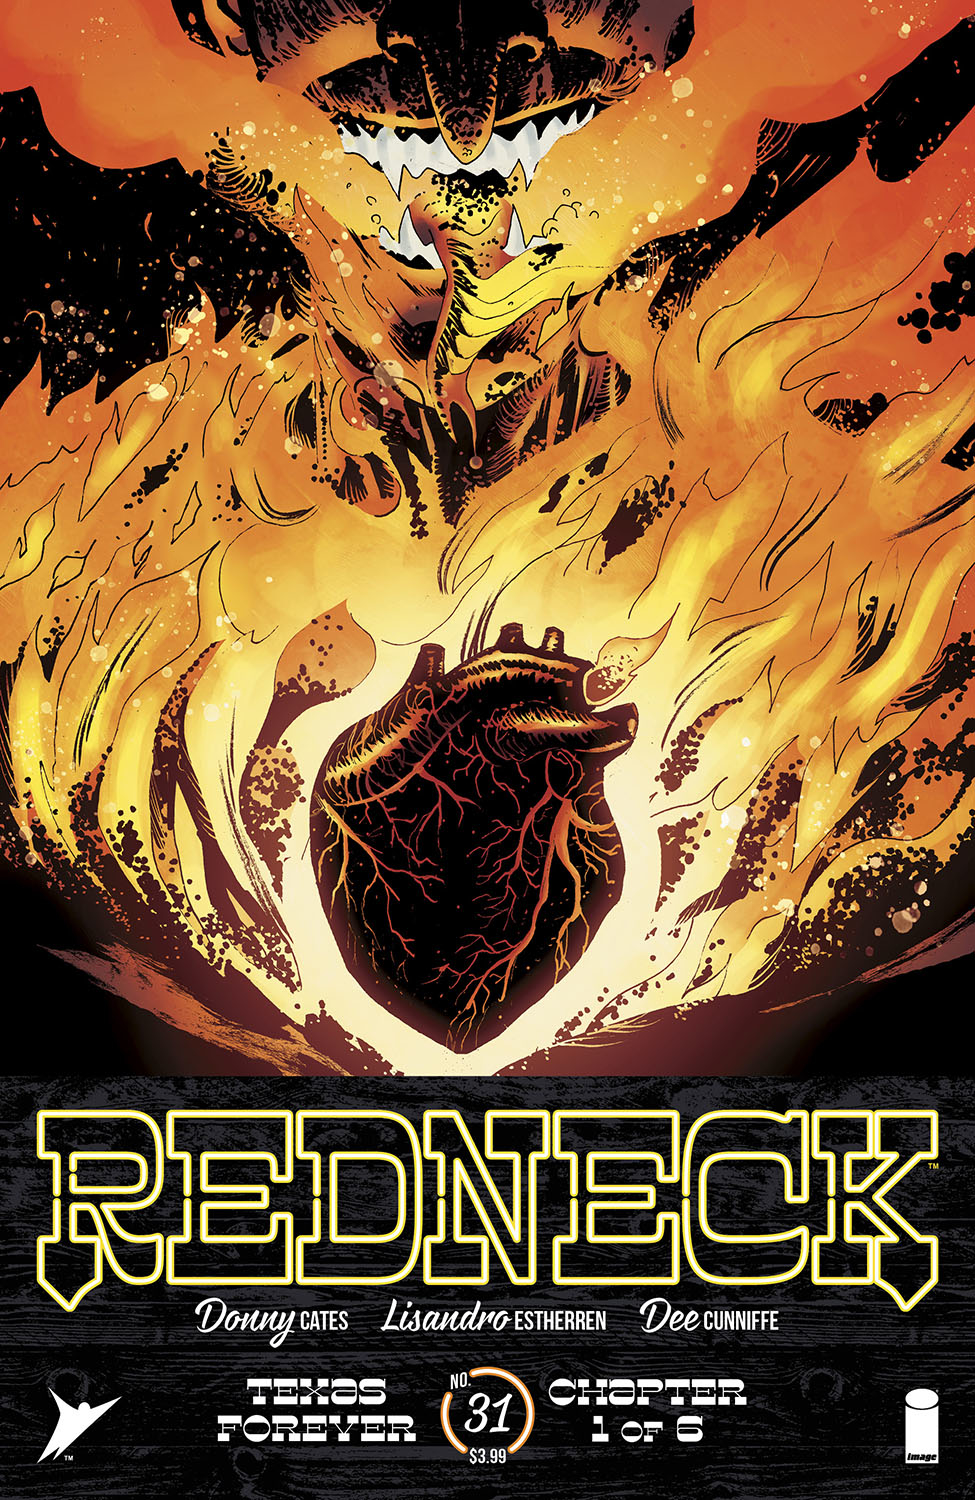 Redneck #31 (Mature)